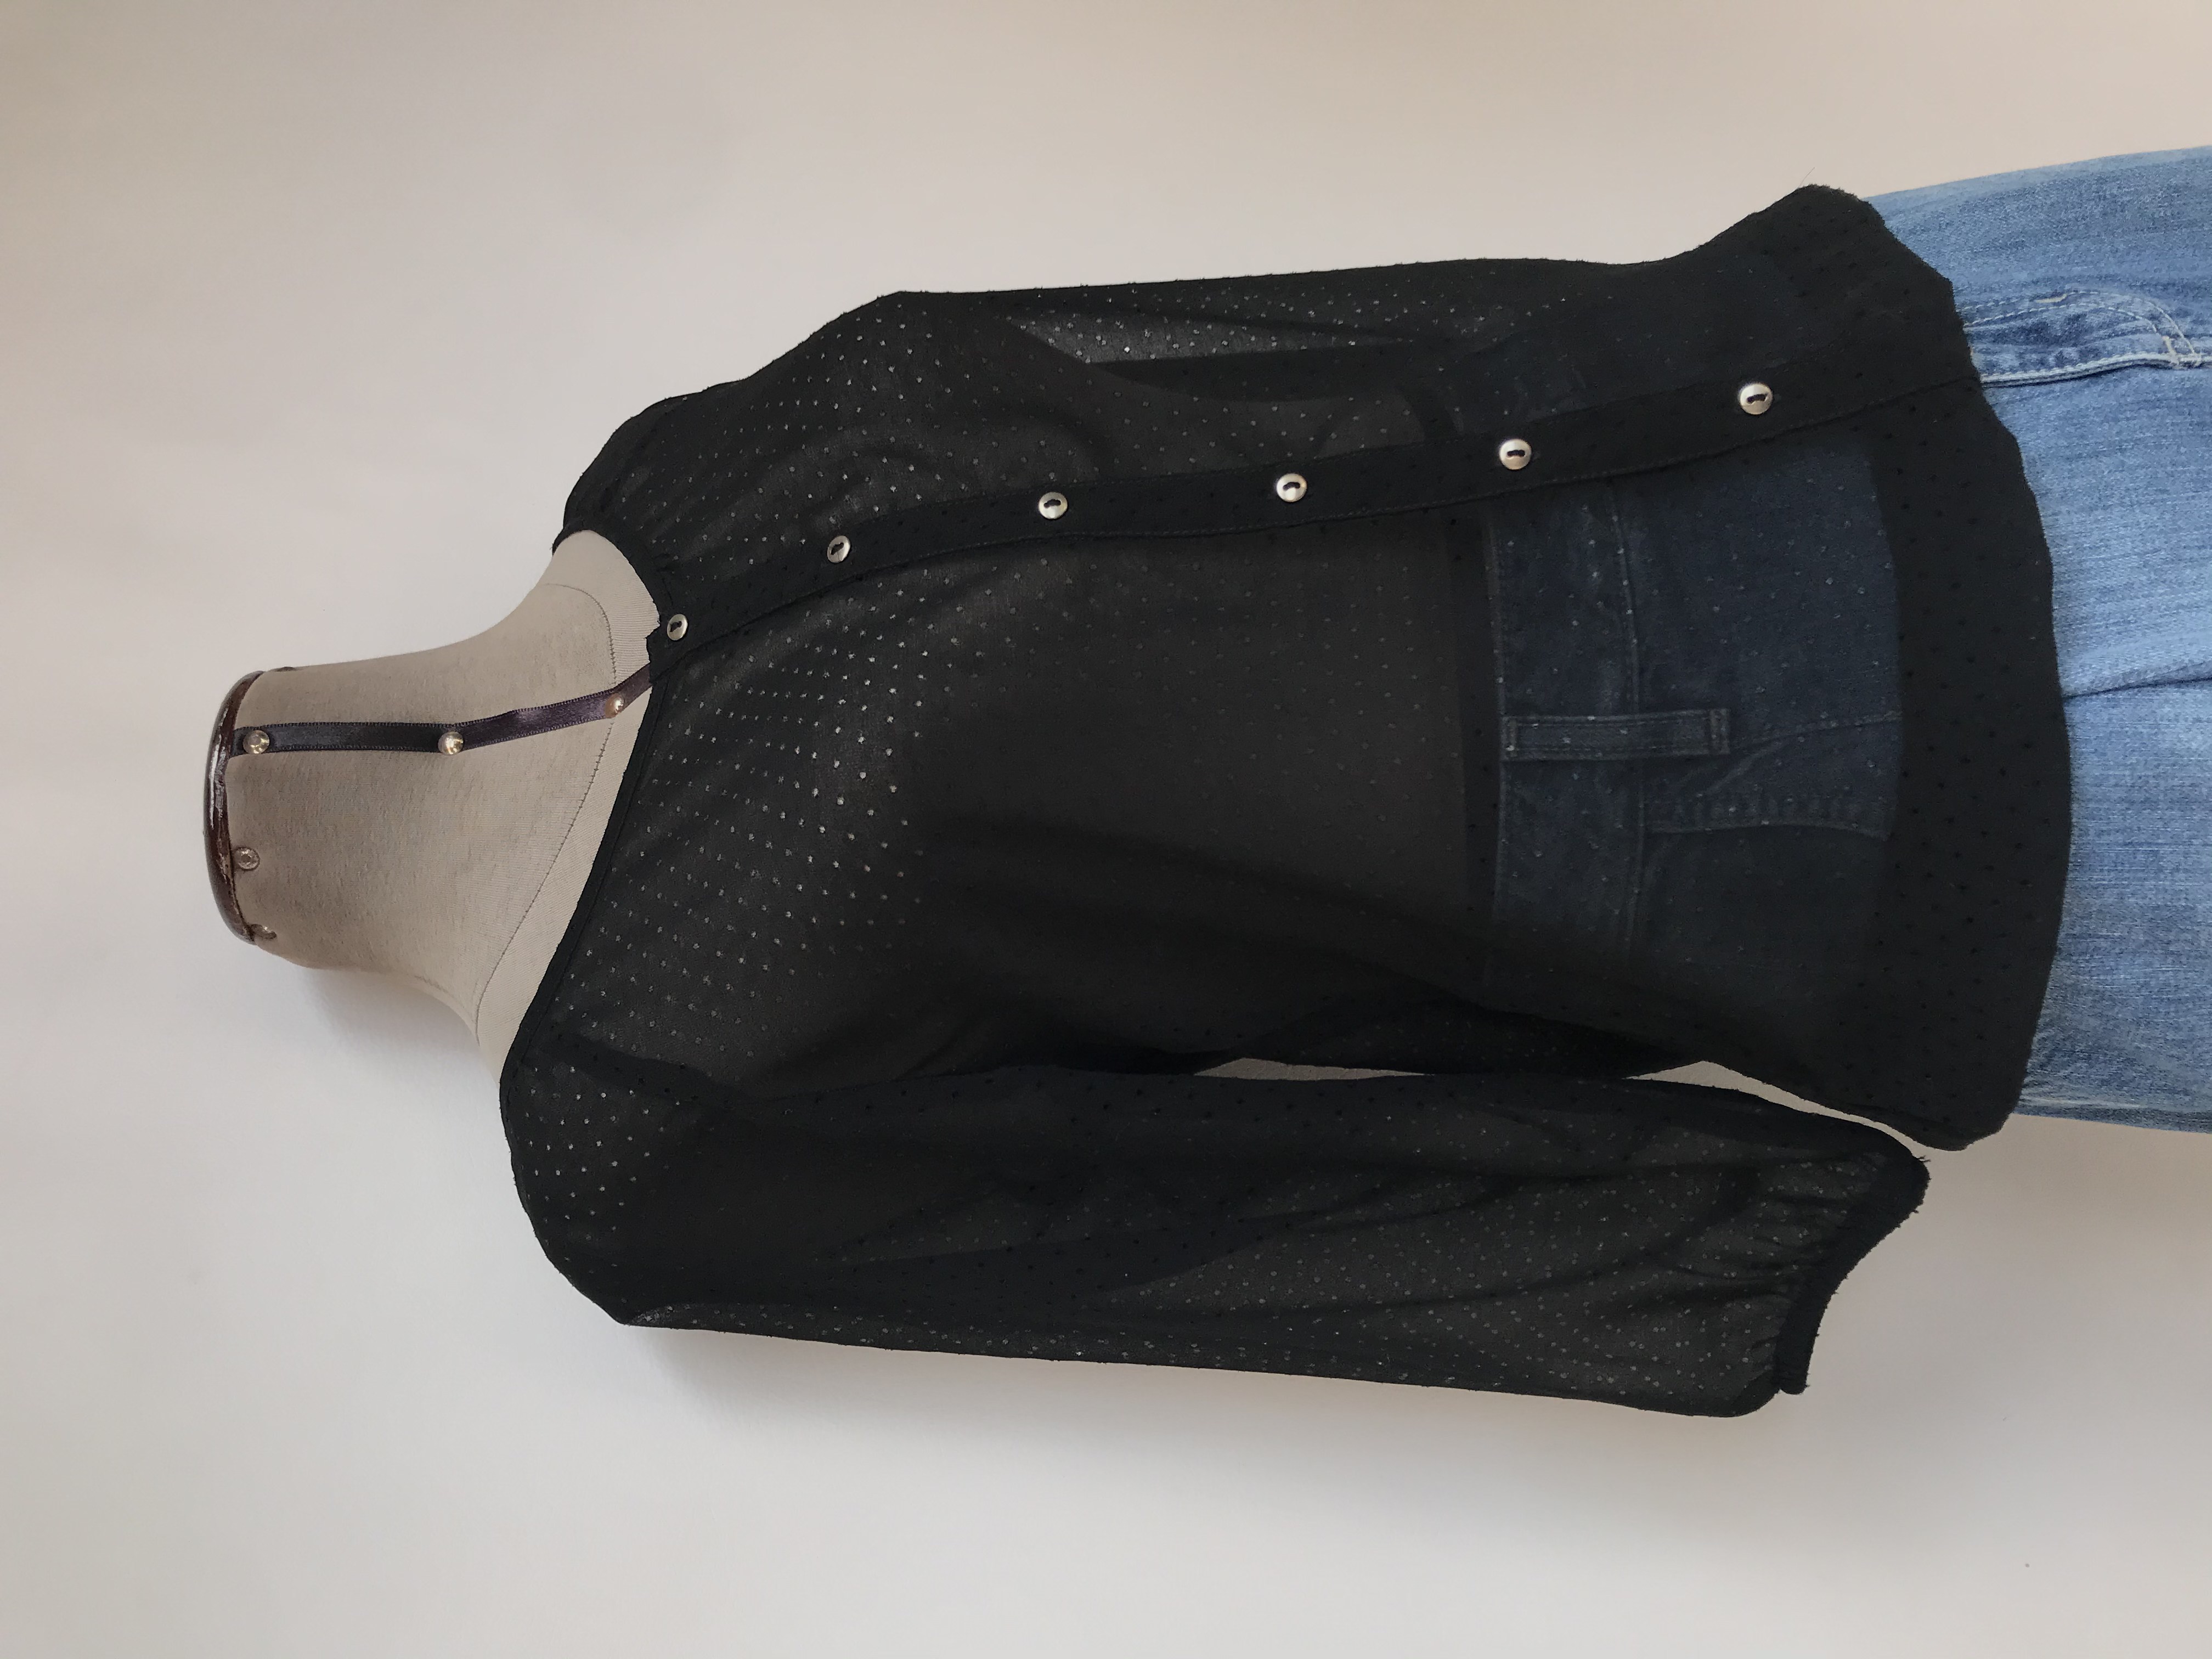 Blusa Exit de gasa negra con calado de circulitos, fila de botones plateados, manga 3/4, elástico en la basta y puños
Talla XS